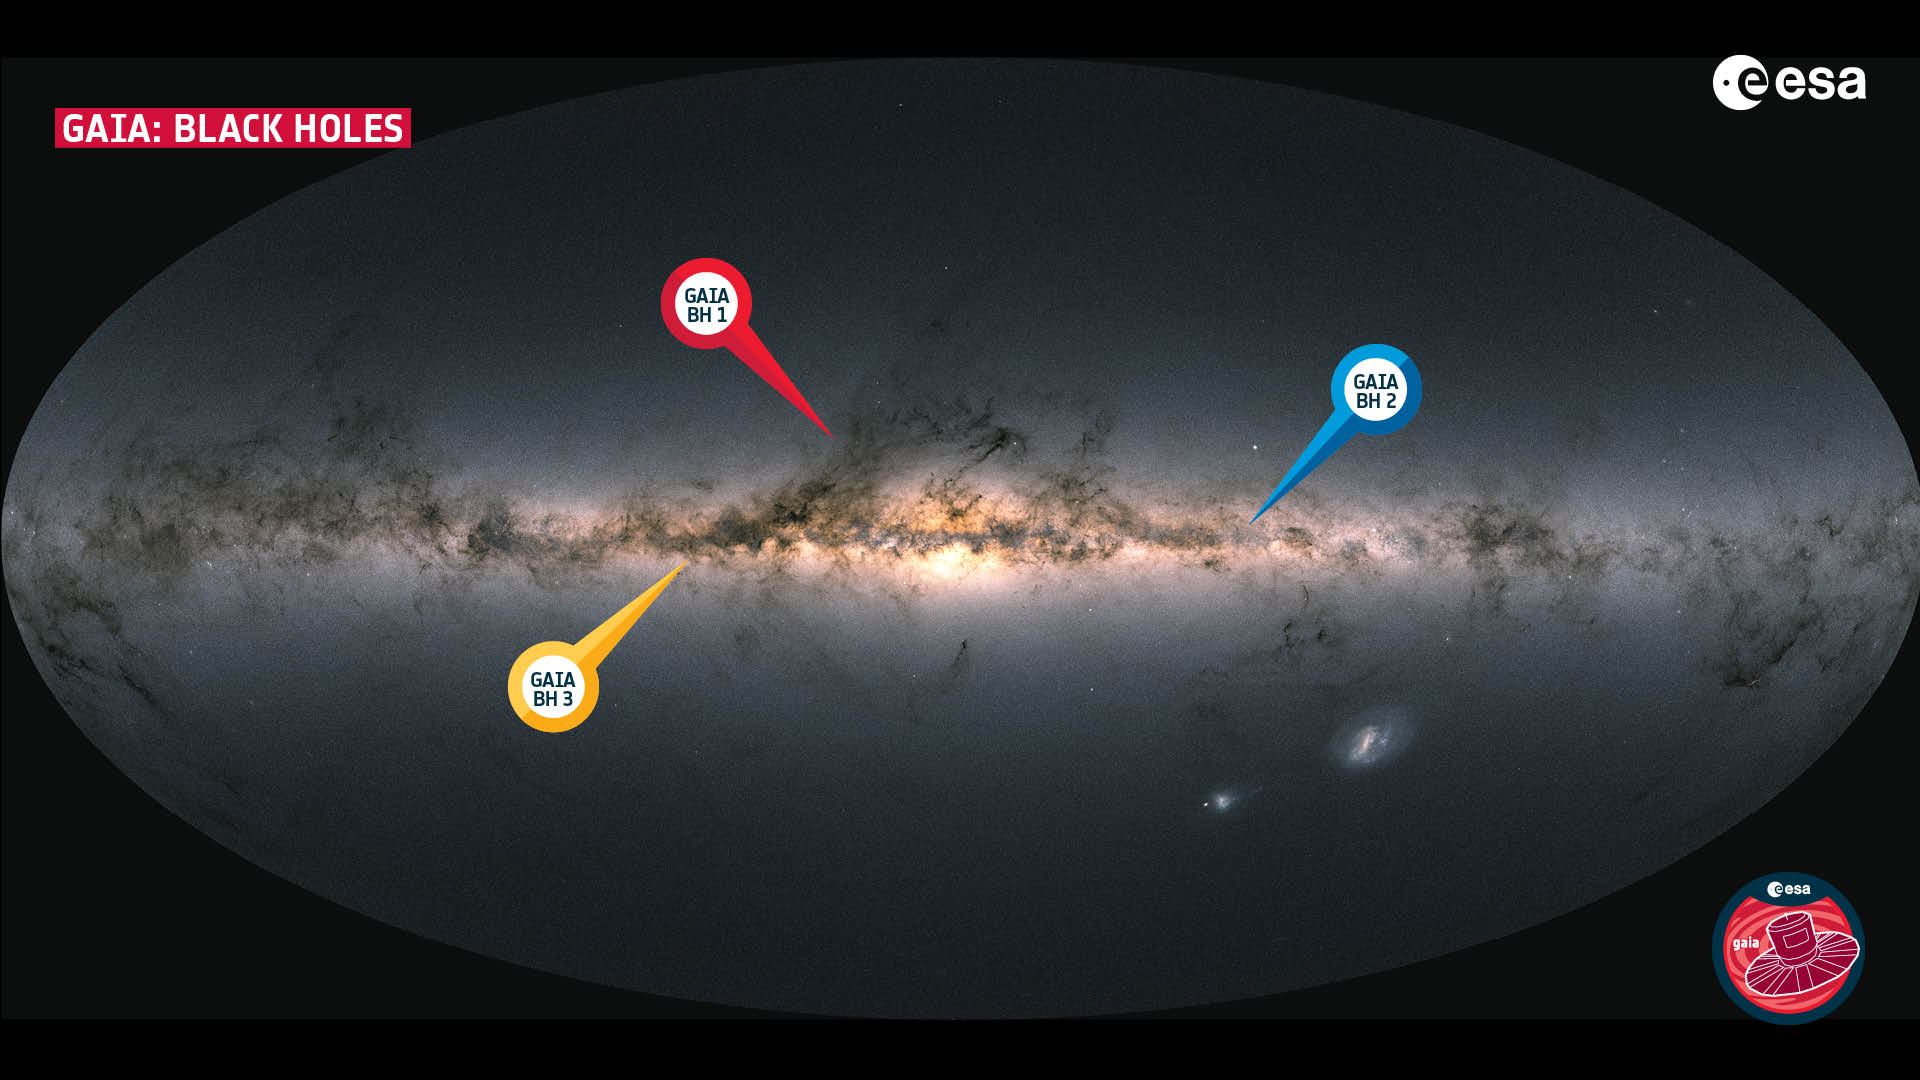 BH3 es el tercer agujero negro de la Vía Láctea de GAIA